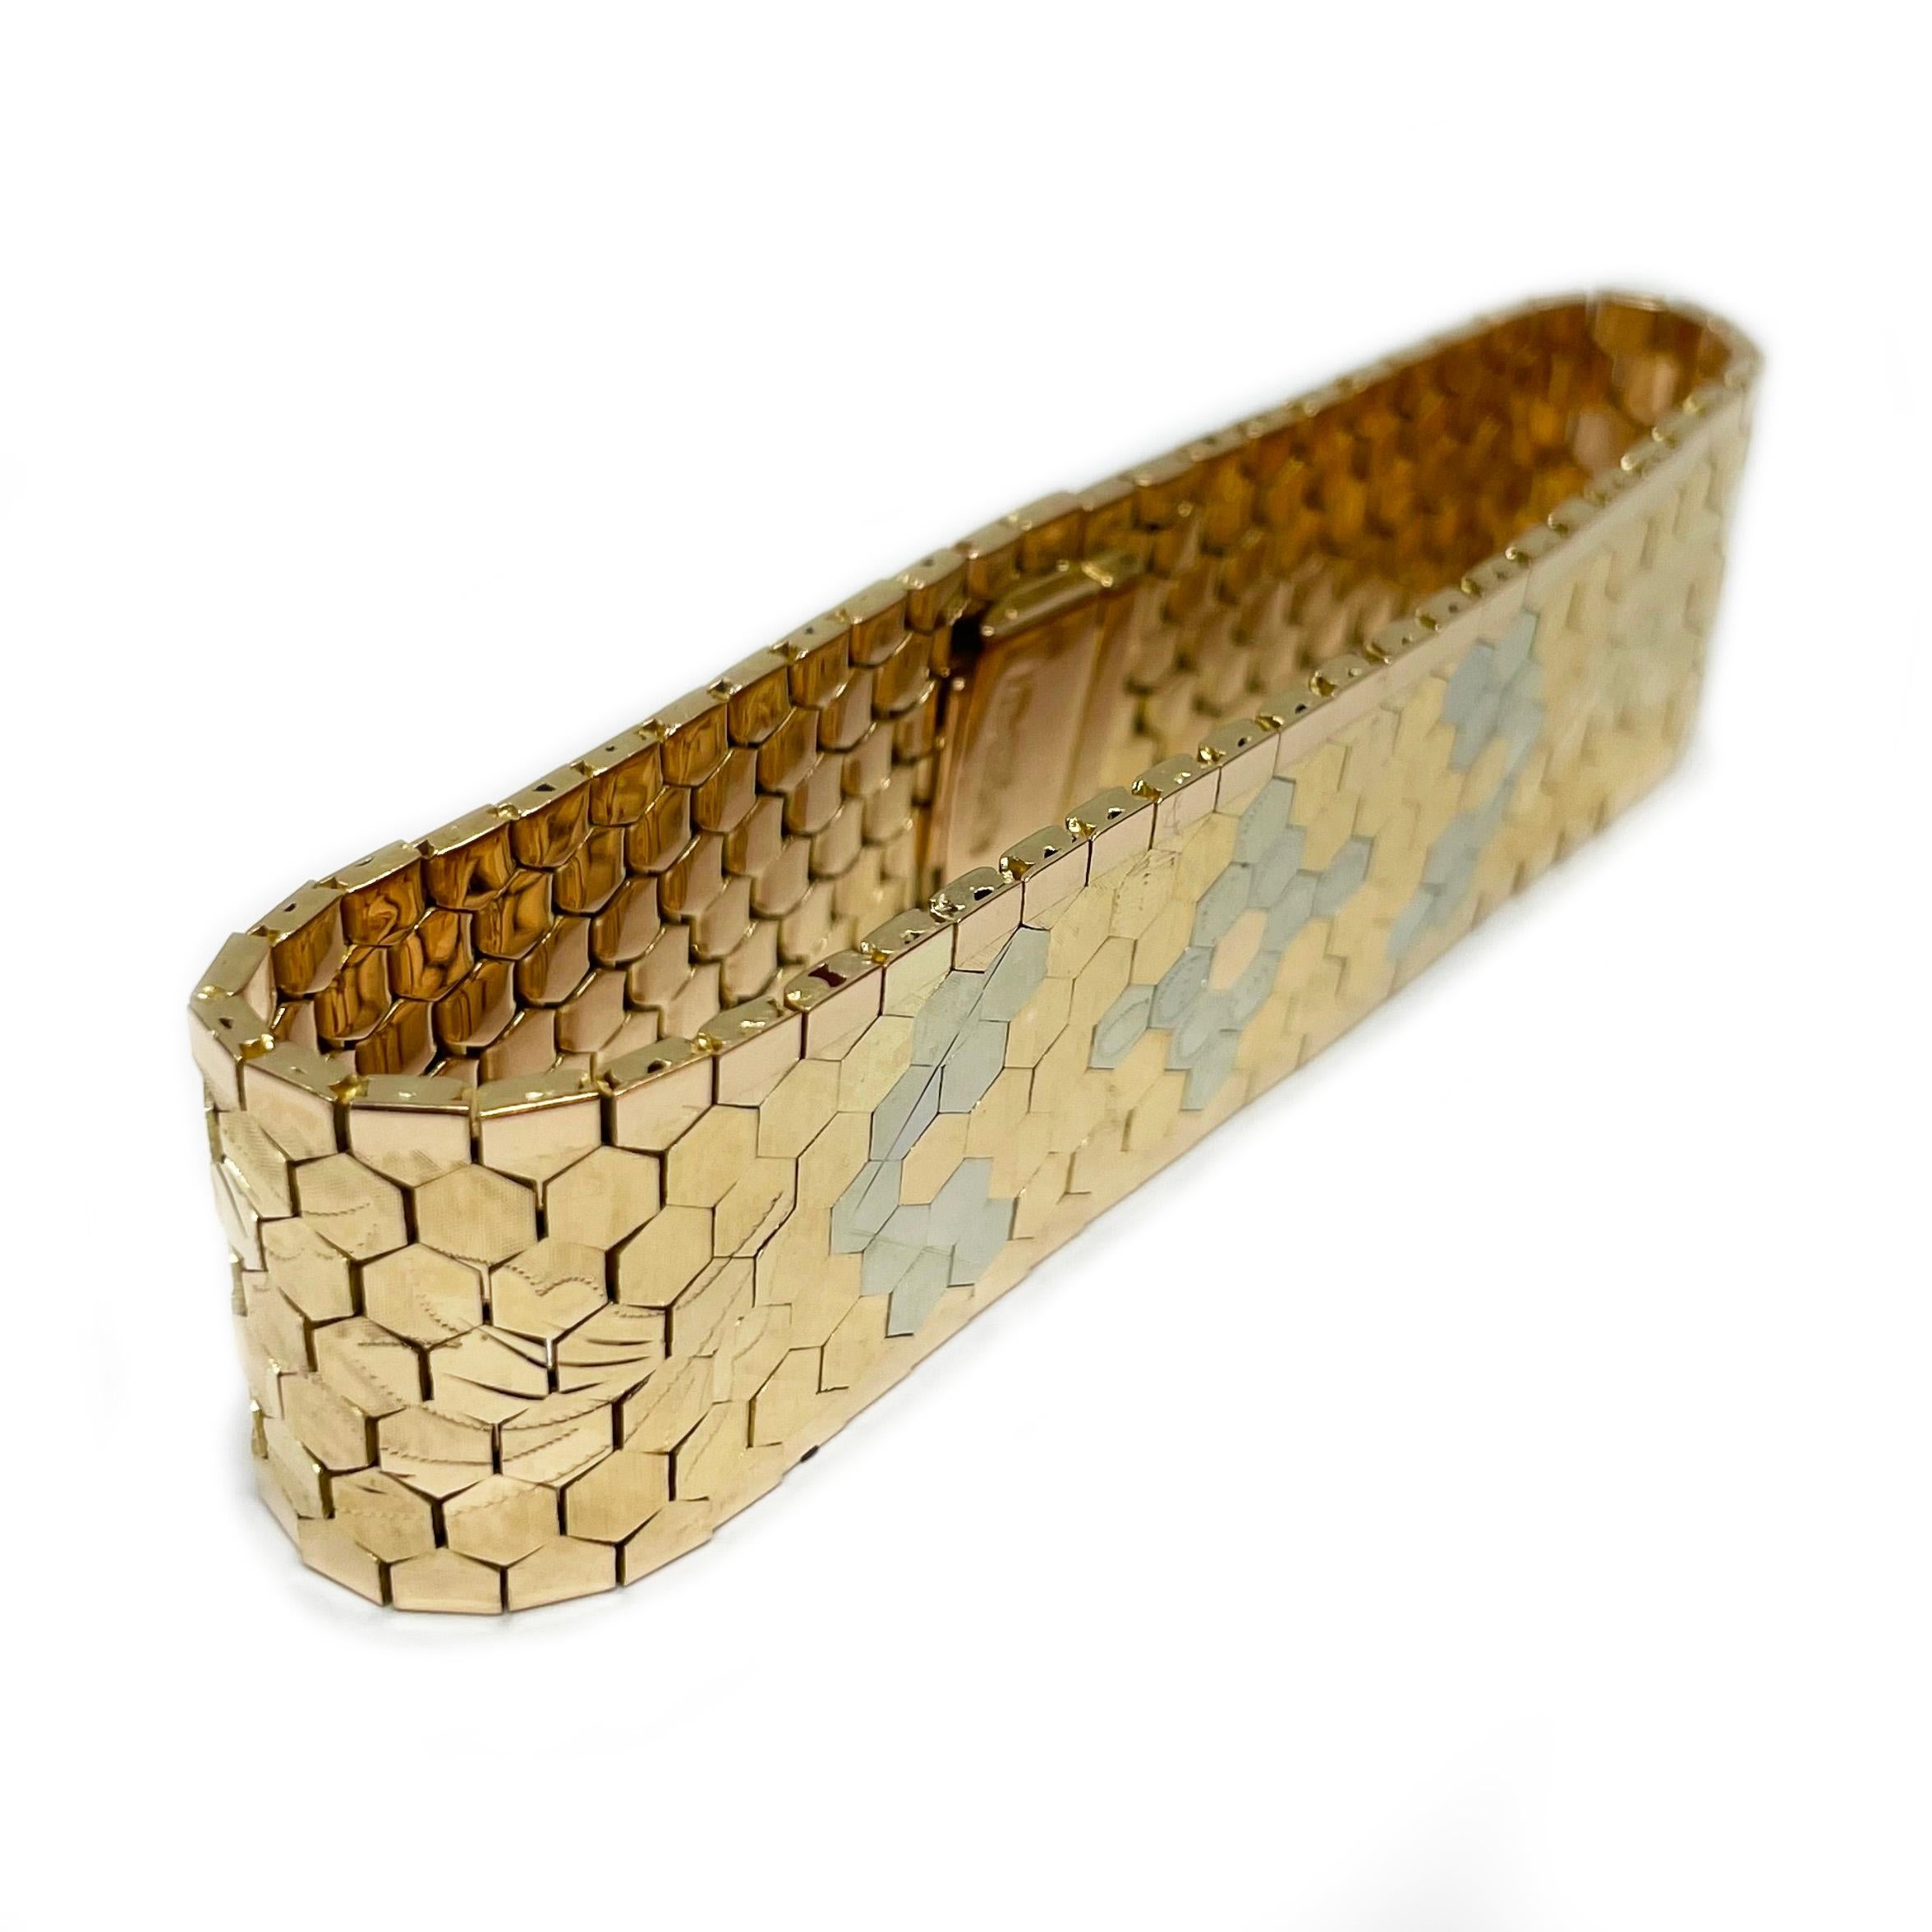 Bracelet en nid d'abeille 18 carats à double tonalité de diamants taillés. Le bracelet présente un motif floral taillé dans des diamants, en or blanc et en or jaune. La face avant du bracelet présente des finitions à la fois texturées et lisses et